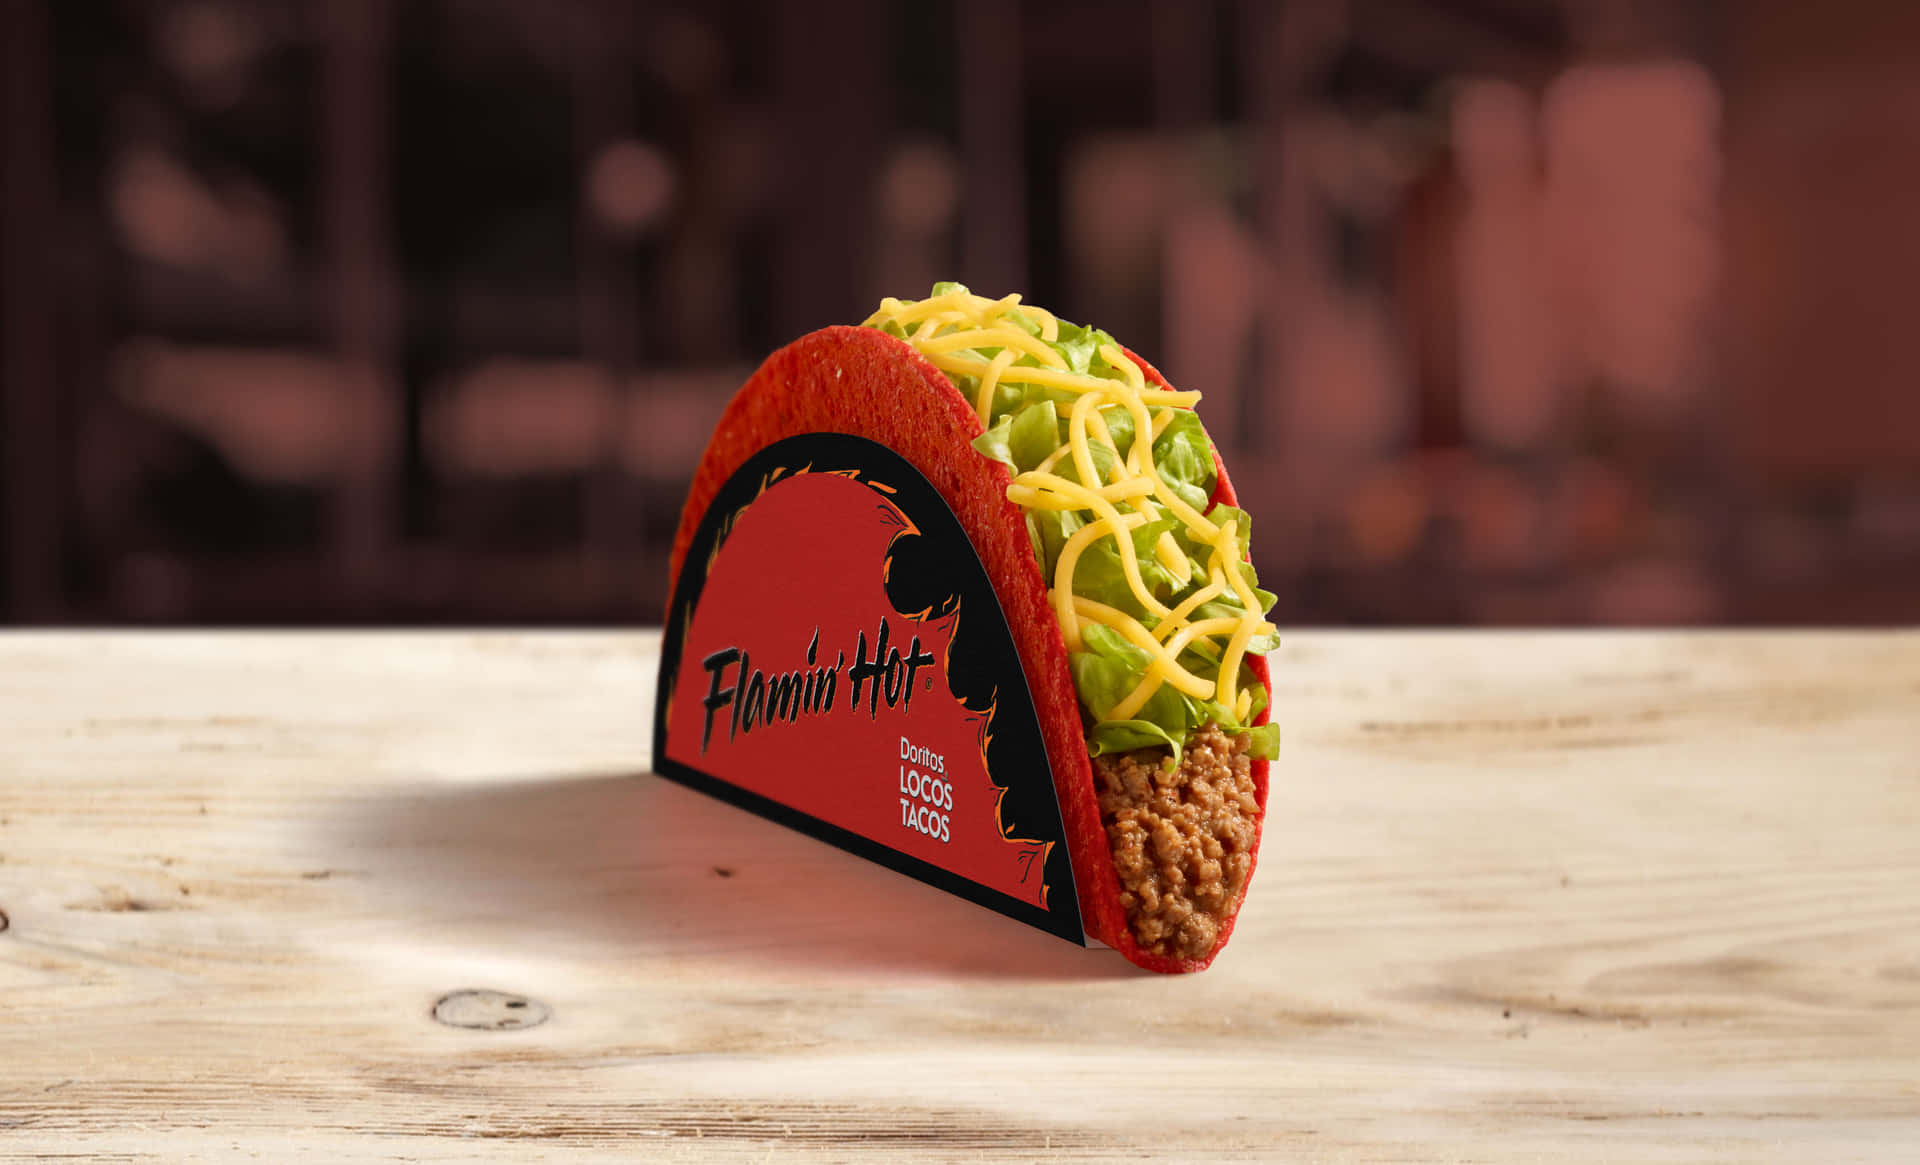 Genießensie Eine Vielzahl Von Köstlichen Tacos Von Taco Bell!